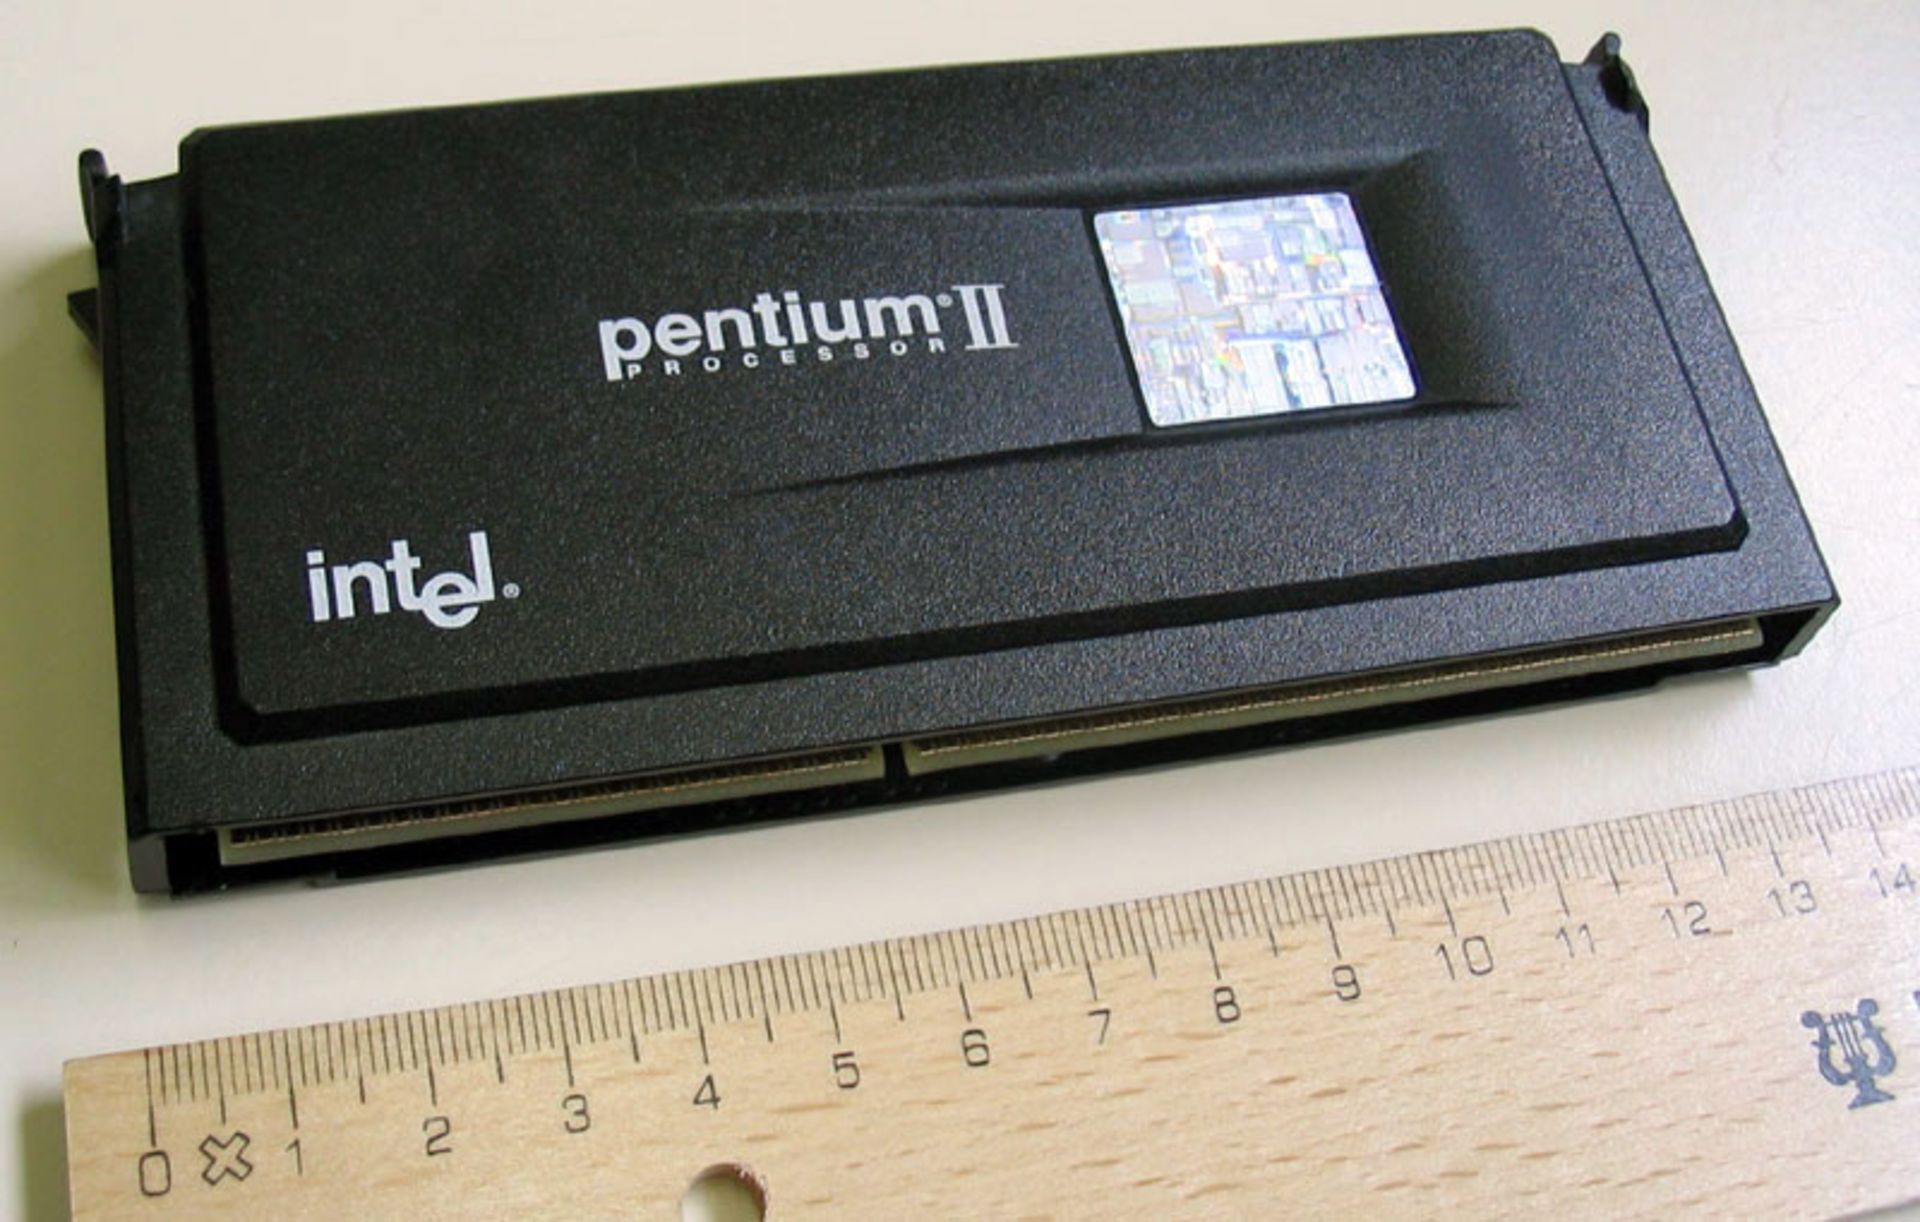 مرجع متخصصين ايران پردازنده پنتيوم 2 اينتل intel Pentium II